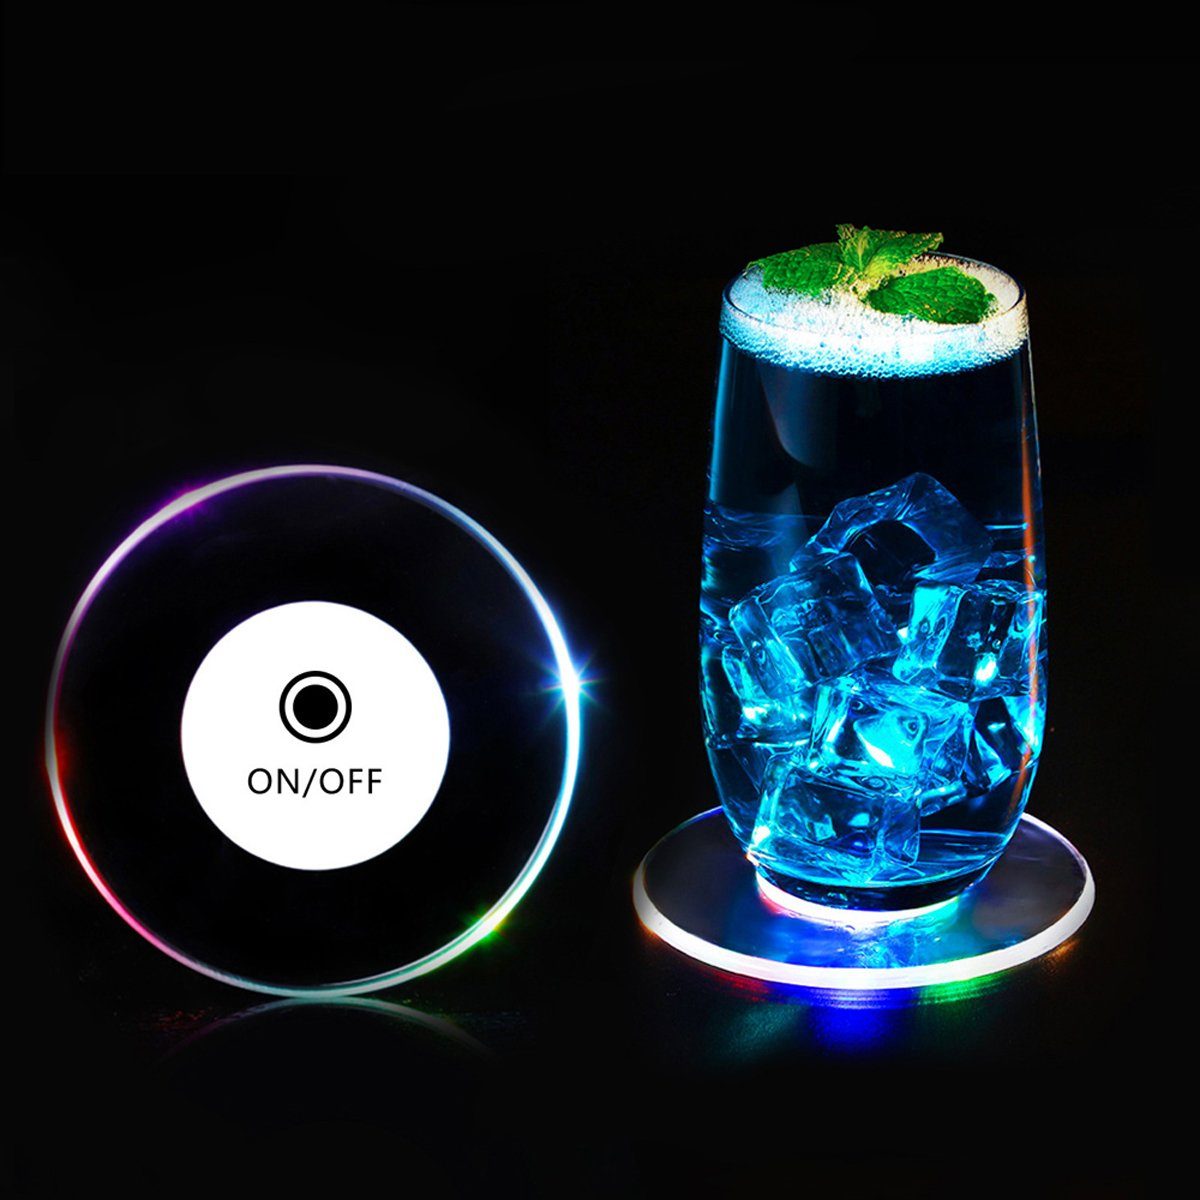 Jormftte Glasuntersetzer Bunt LED Leuchte Untersetzer für Partys Hochzeiten Bar Weihnachten Transparent1 | Getränkeuntersetzer